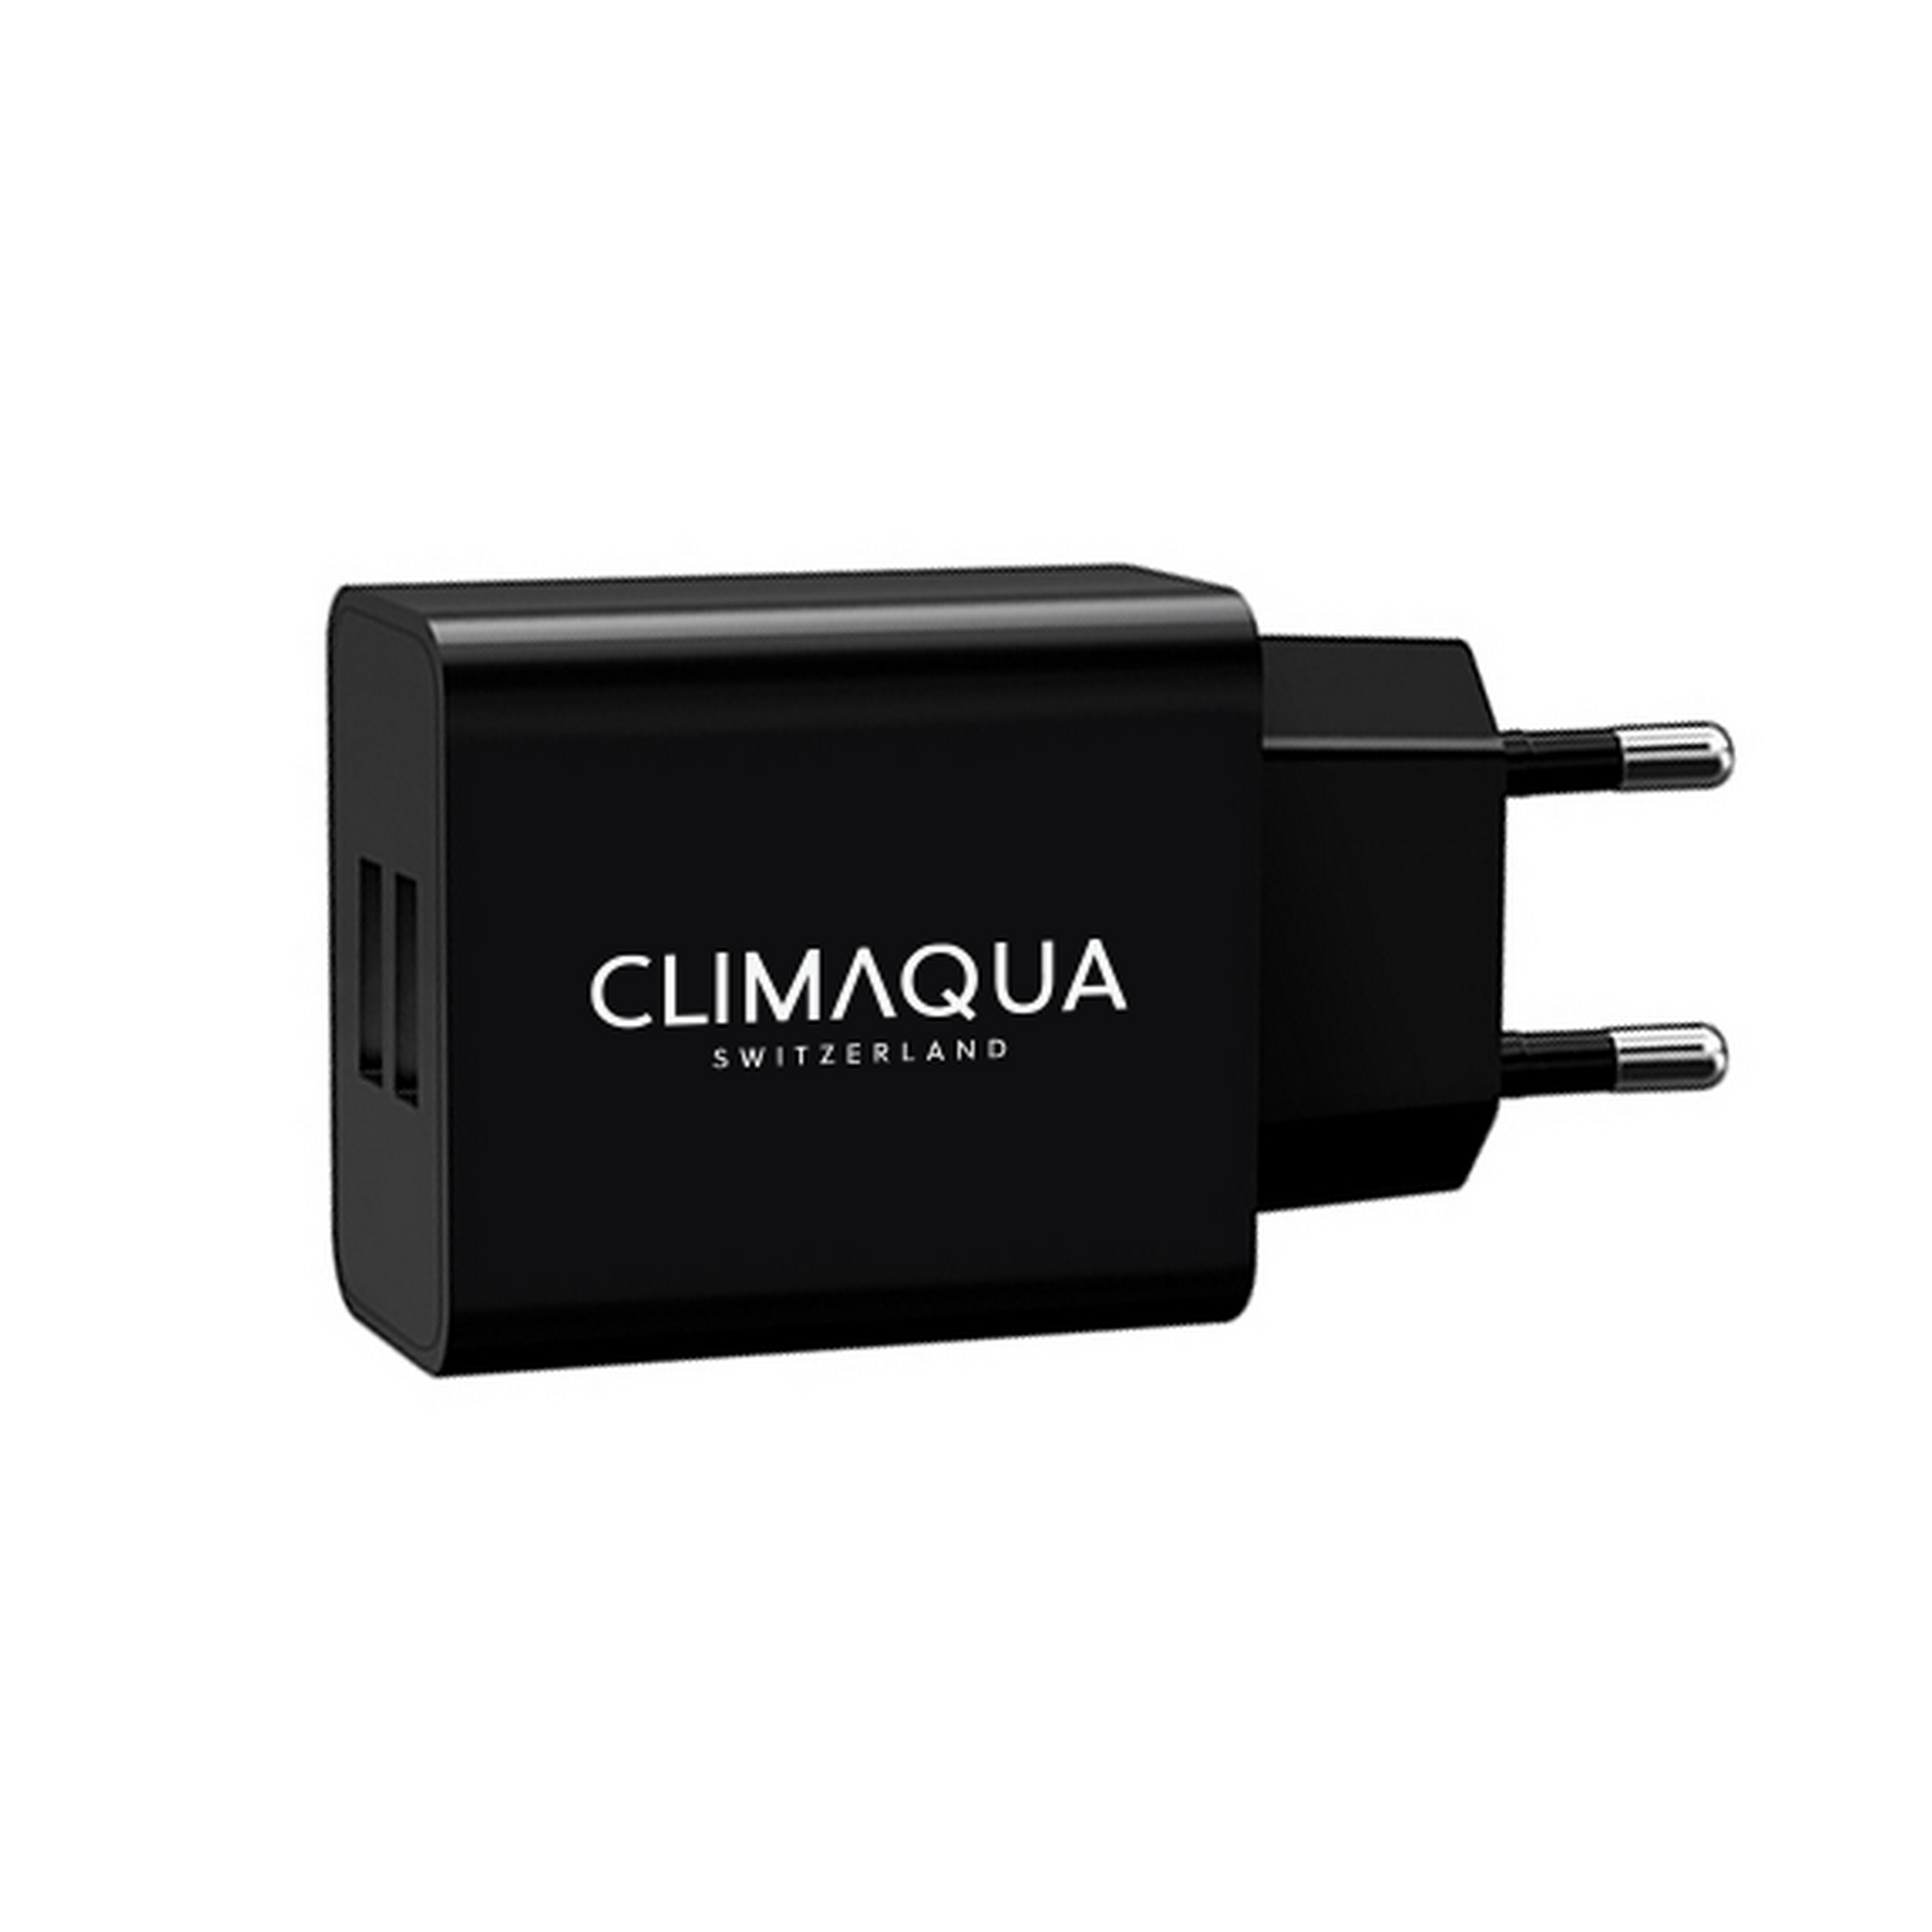 Dual-USB-Netzstecker für Pumpen + product picture